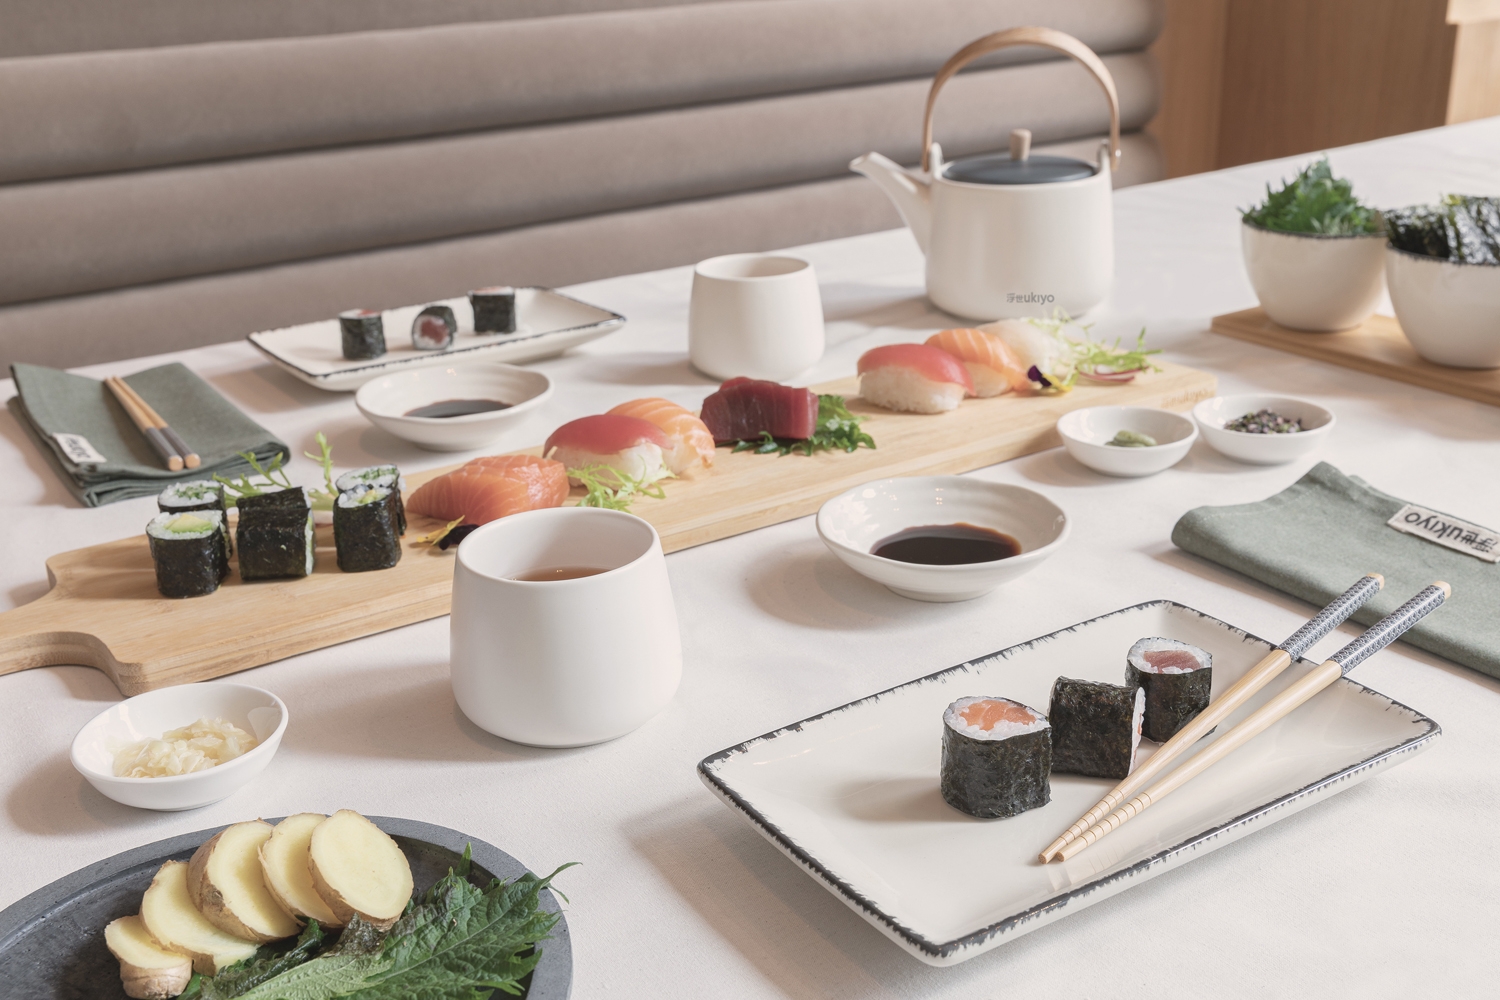 Набор посуды для суши Ukiyo для двоих, керамика; бамбук